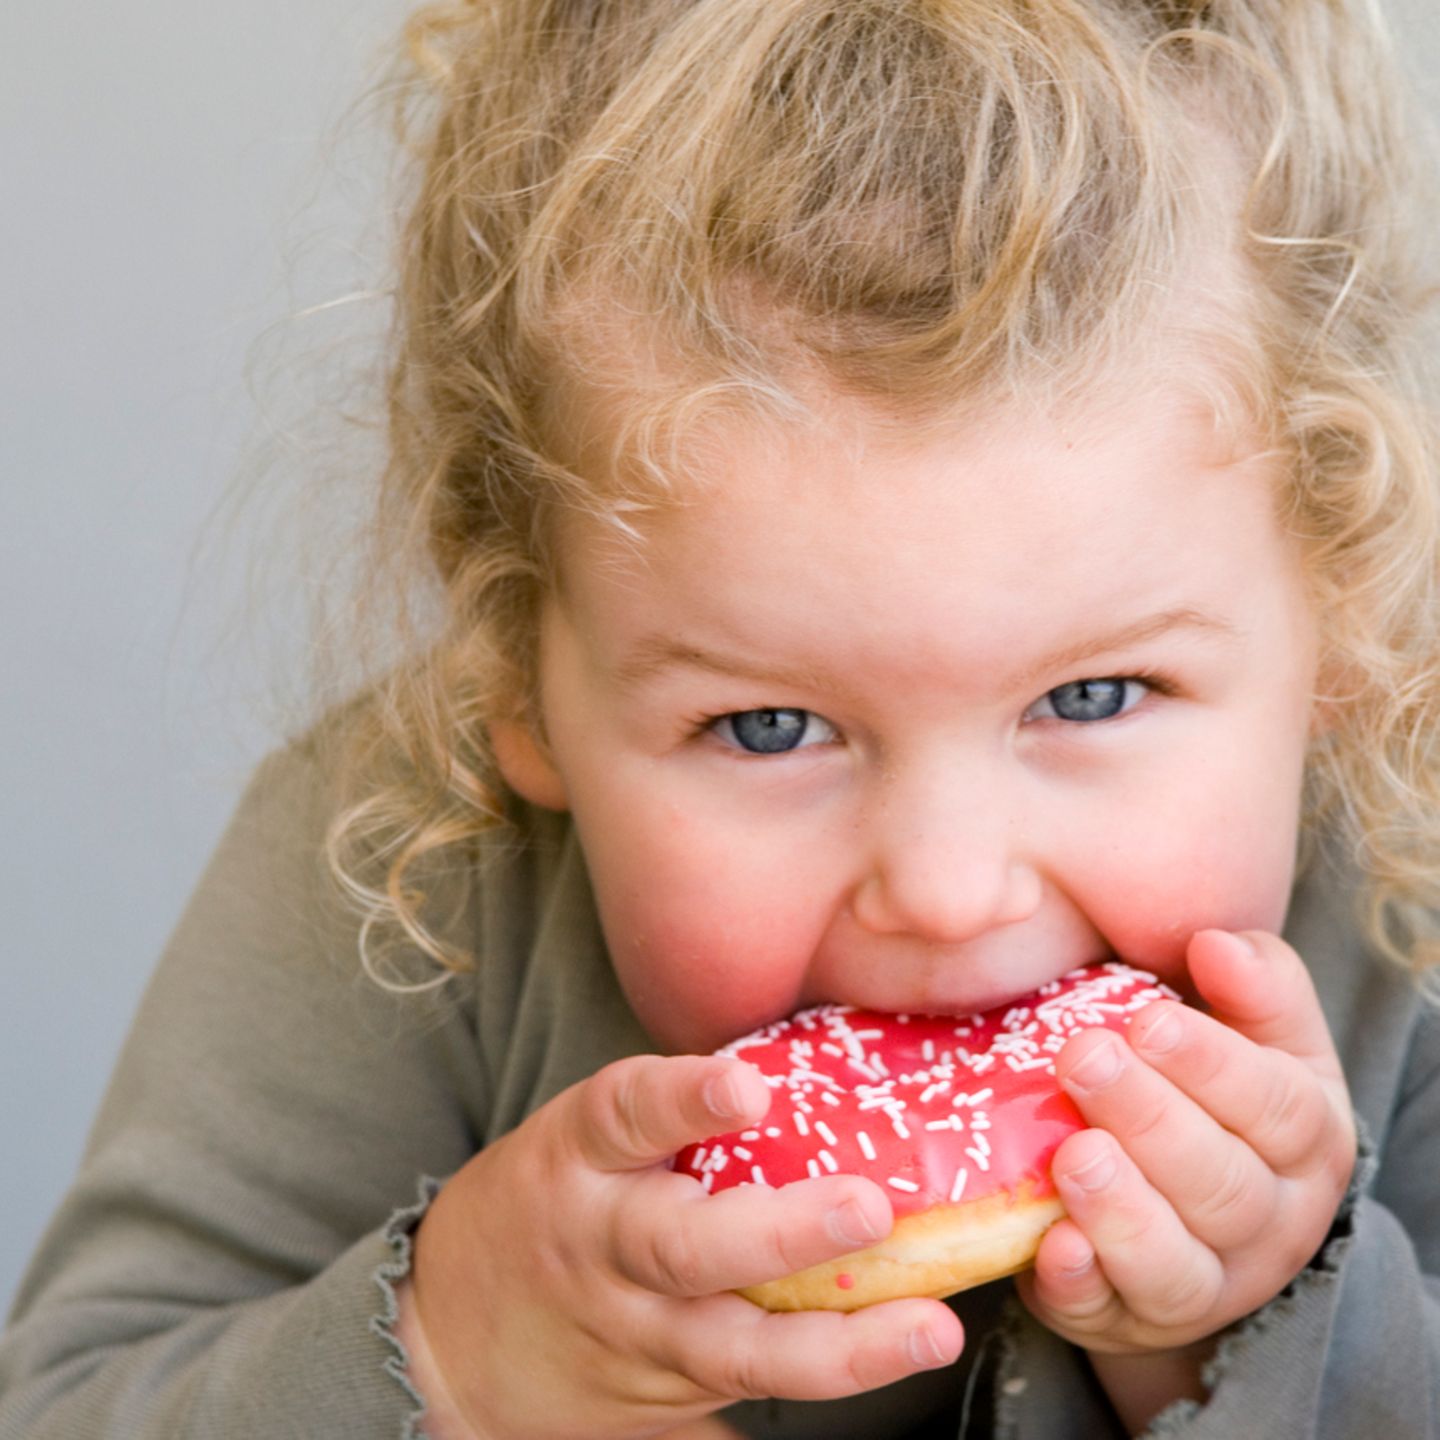 Welche Ursachen kann Übergewicht bei Kindern haben?